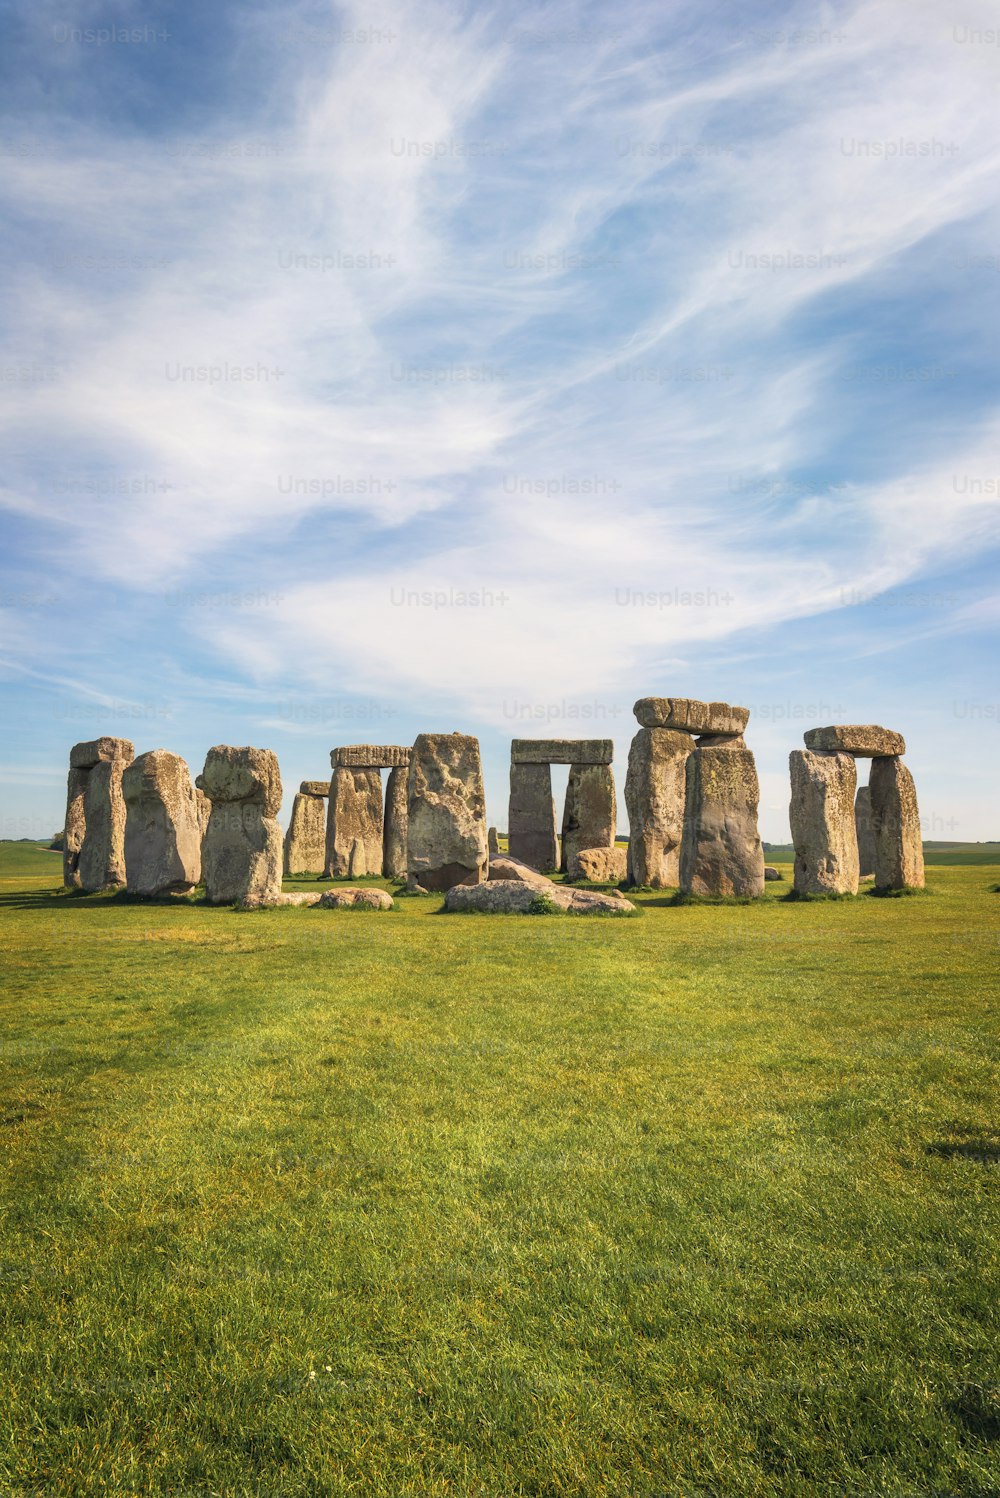 Stonehenge un antico monumento preistorico in pietra vicino a Salisbury, Regno Unito, patrimonio mondiale dell'UNESCO.